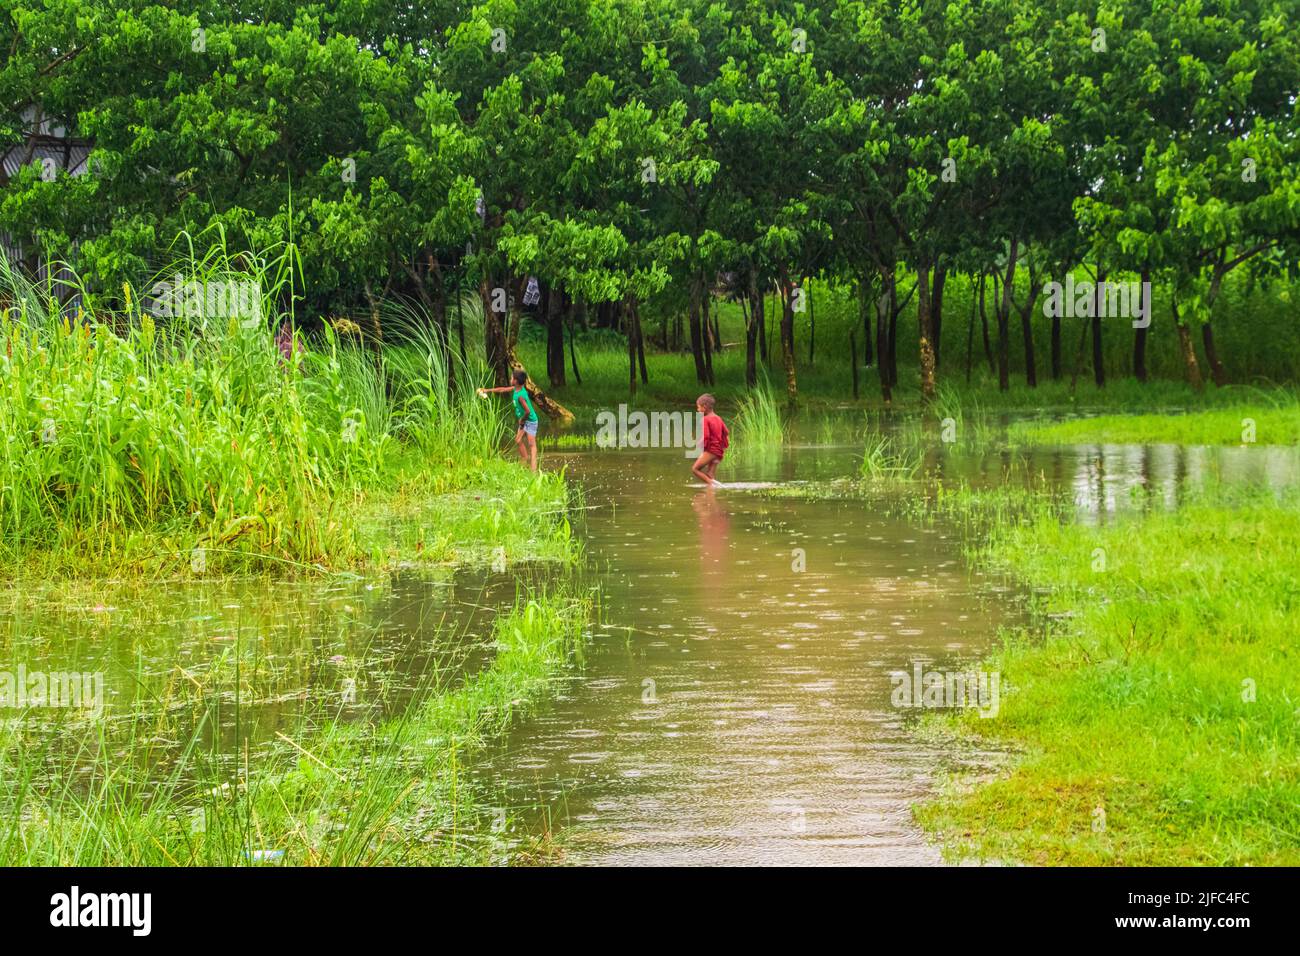 Das Hochwasser wird das Inselgebiet des Zajira-Flussufers beeinträchtigen. Dieses Bild wurde am 2022-06-18 aus Zajira, Bangladesch, Südasien, aufgenommen Stockfoto